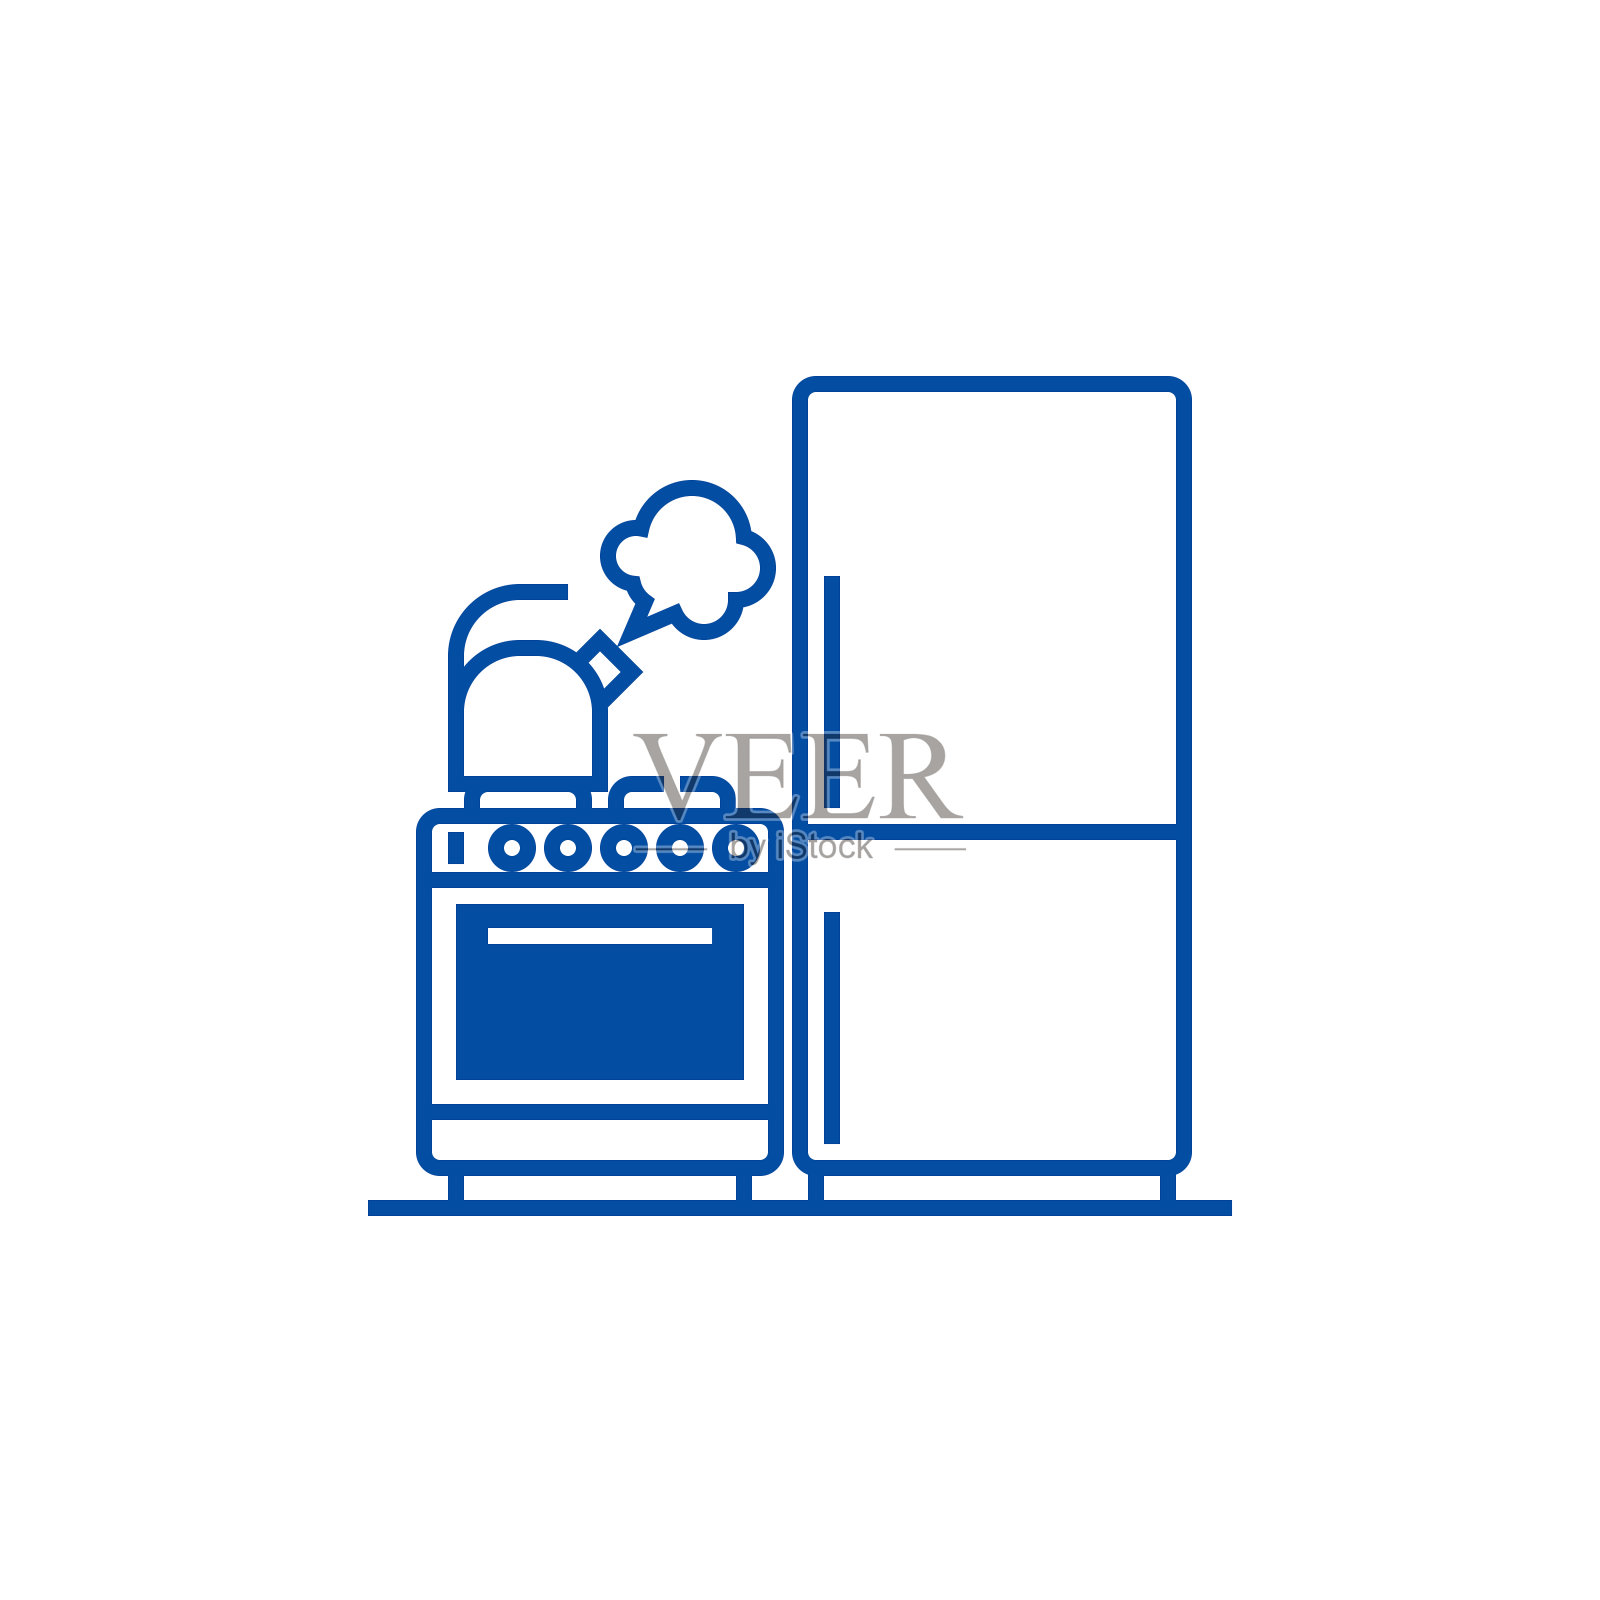 厨房，冰箱，炉子，水壶系列图标概念。厨房、冰箱、灶台、水壶等平面矢量符号、标识、示意图。设计元素图片